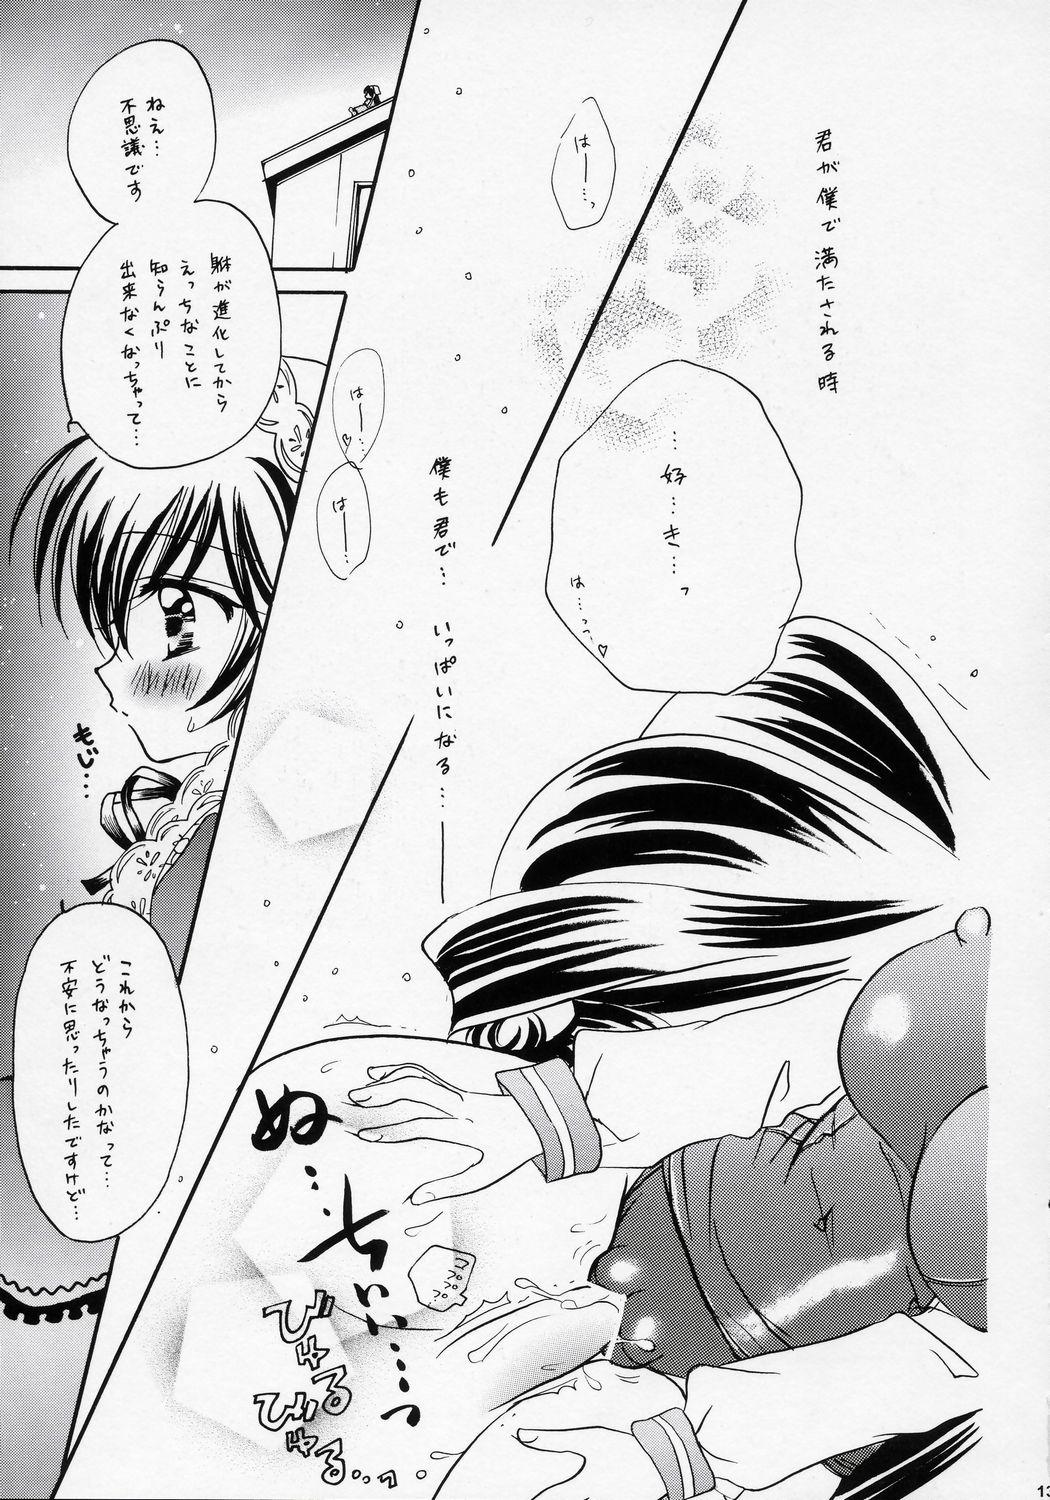 Sologirl Misoka - Rozen maiden Ano - Page 12